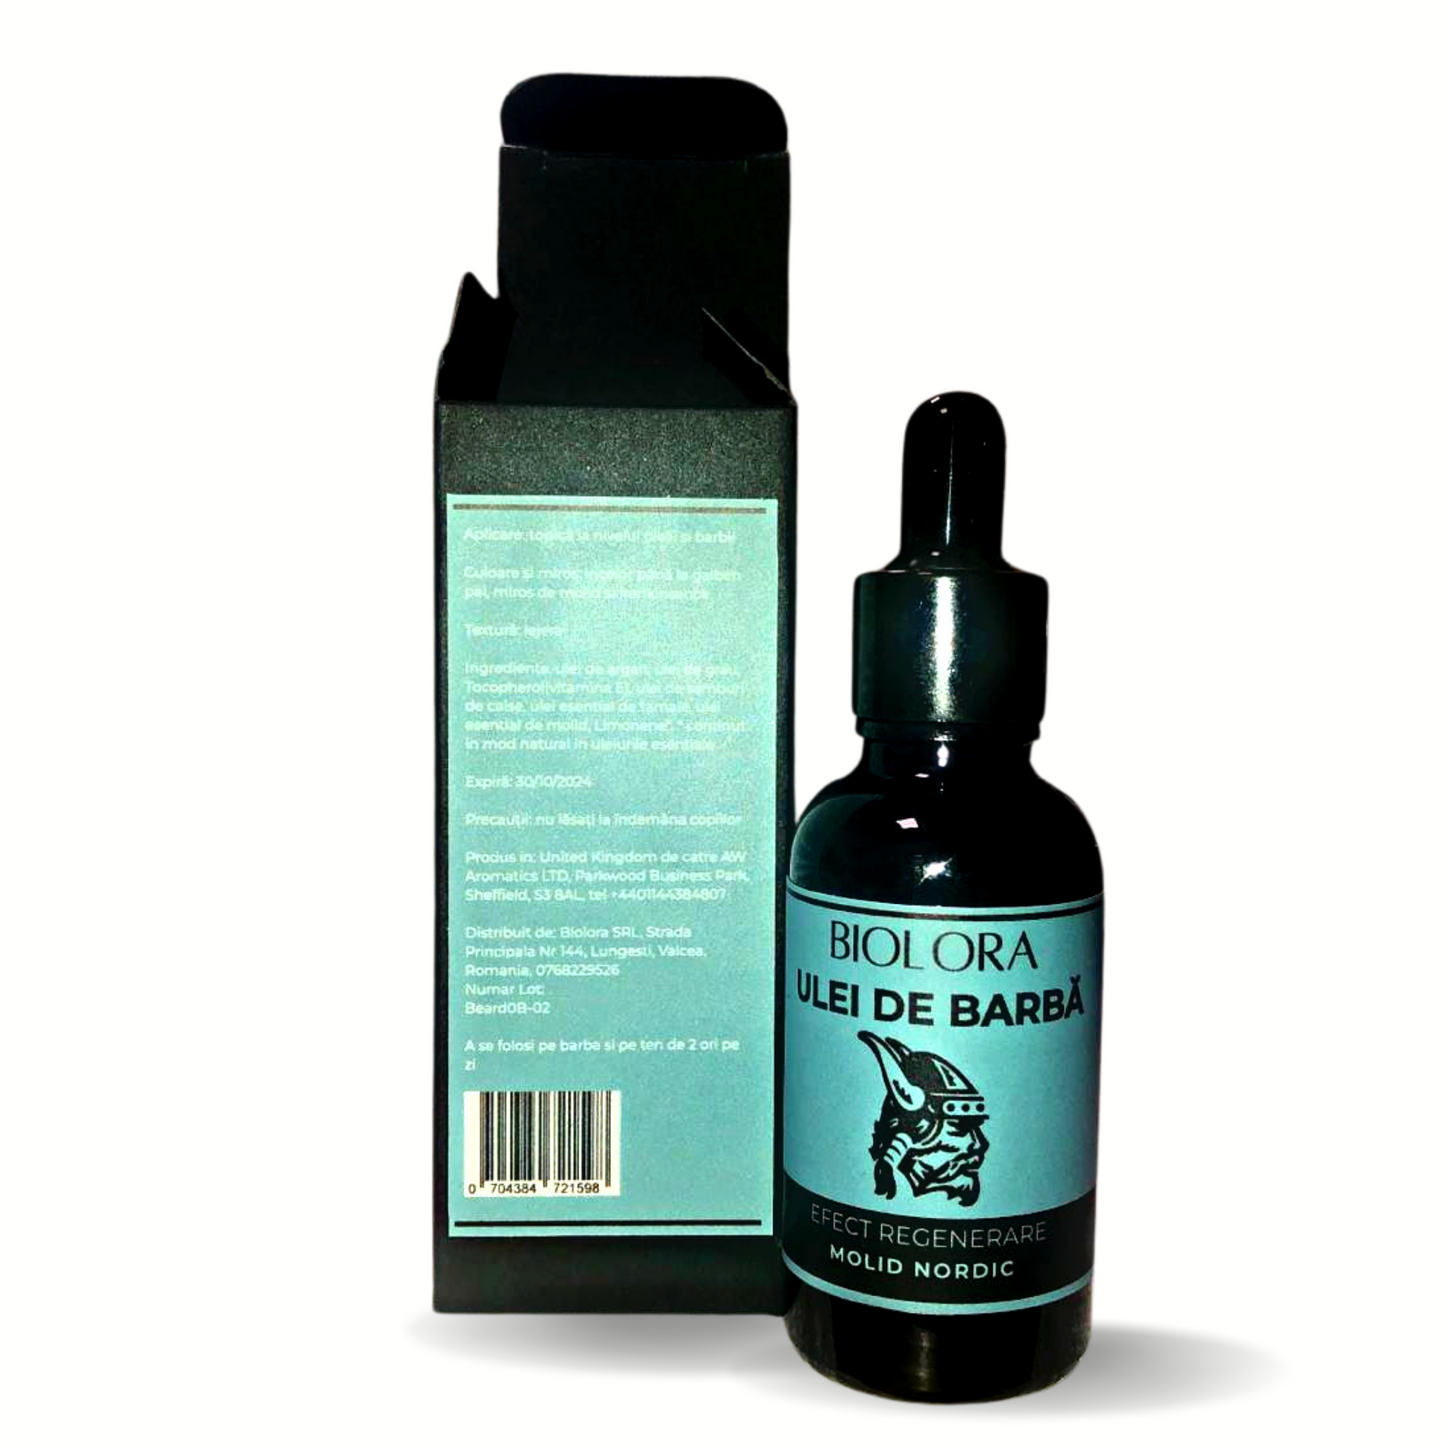 Ulei pentru barba Biolora, aroma Molid Nordic, 30 ml, efect regenerare, cu uleiuri naturale si uleiuri esentiale